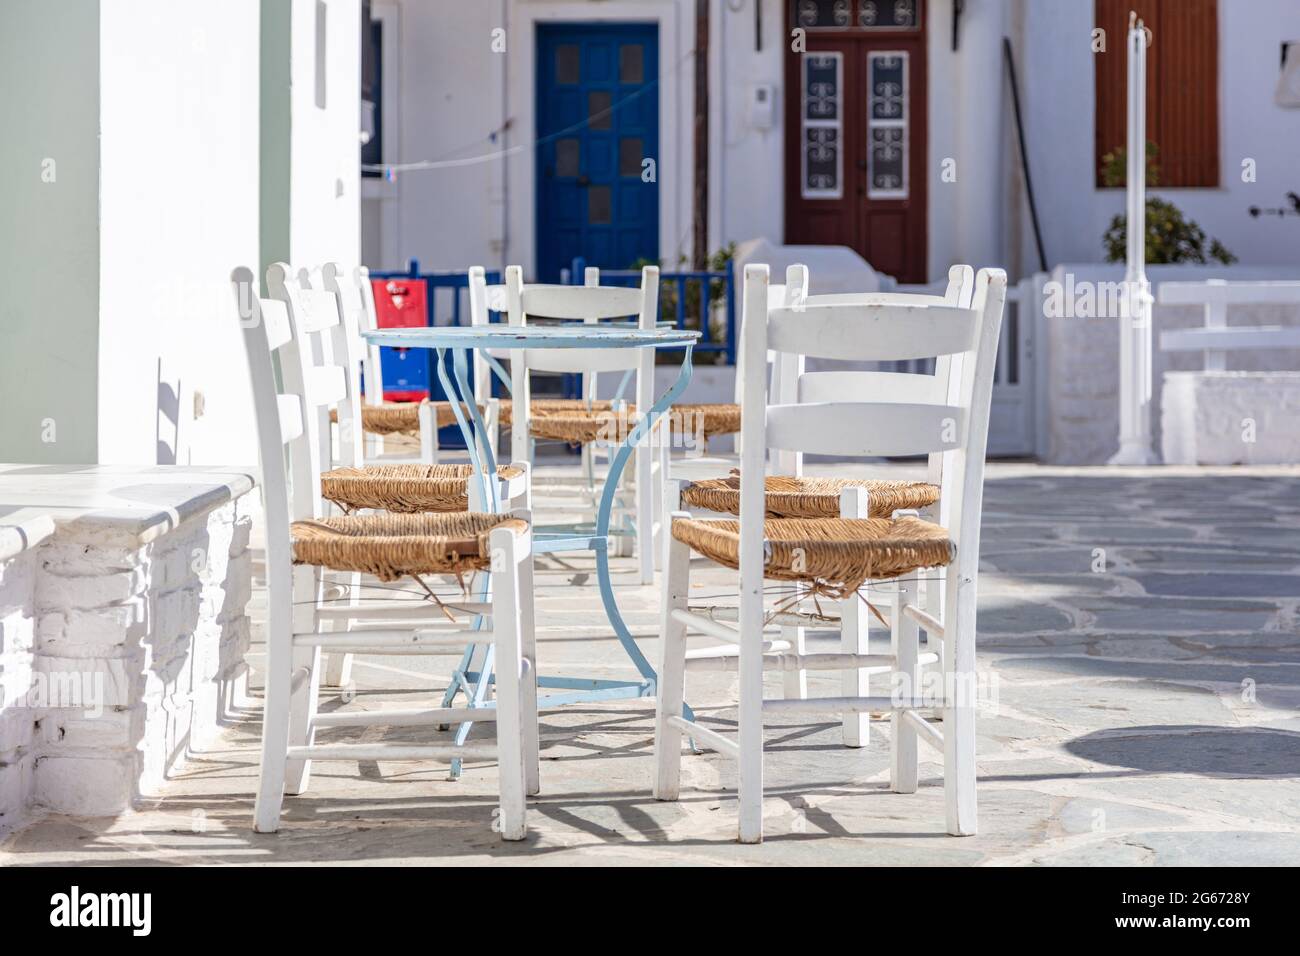 Griechische Insel, Café-Bar im Freien. Typische Cafeteria mit Tisch und Stühlen. Leere Plätze, sonniger Tag in Kythnos Chora Dorf gepflasterte Gasse. Sommer VA Stockfoto